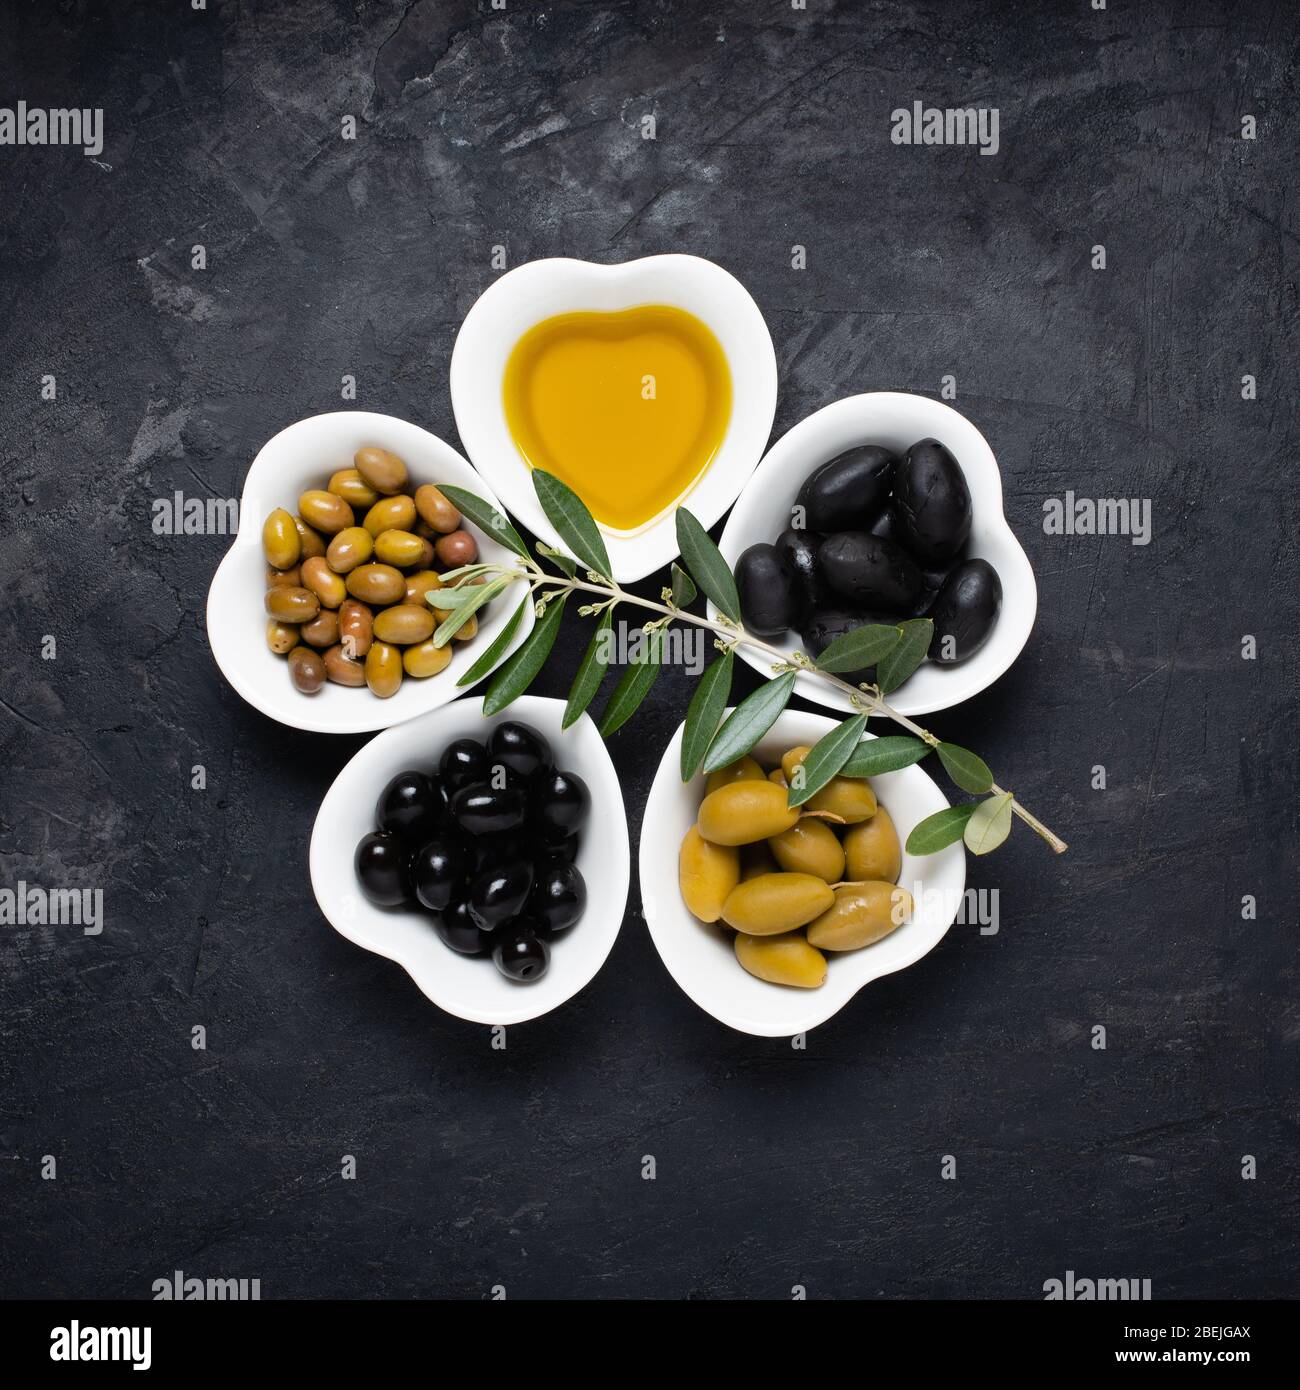 toujours la vie avec des bols en céramique, en forme de coeur, avec de l'huile d'olive extra vierge et différents types d'olives, sur un fond noir rugueux. Haut vi Banque D'Images